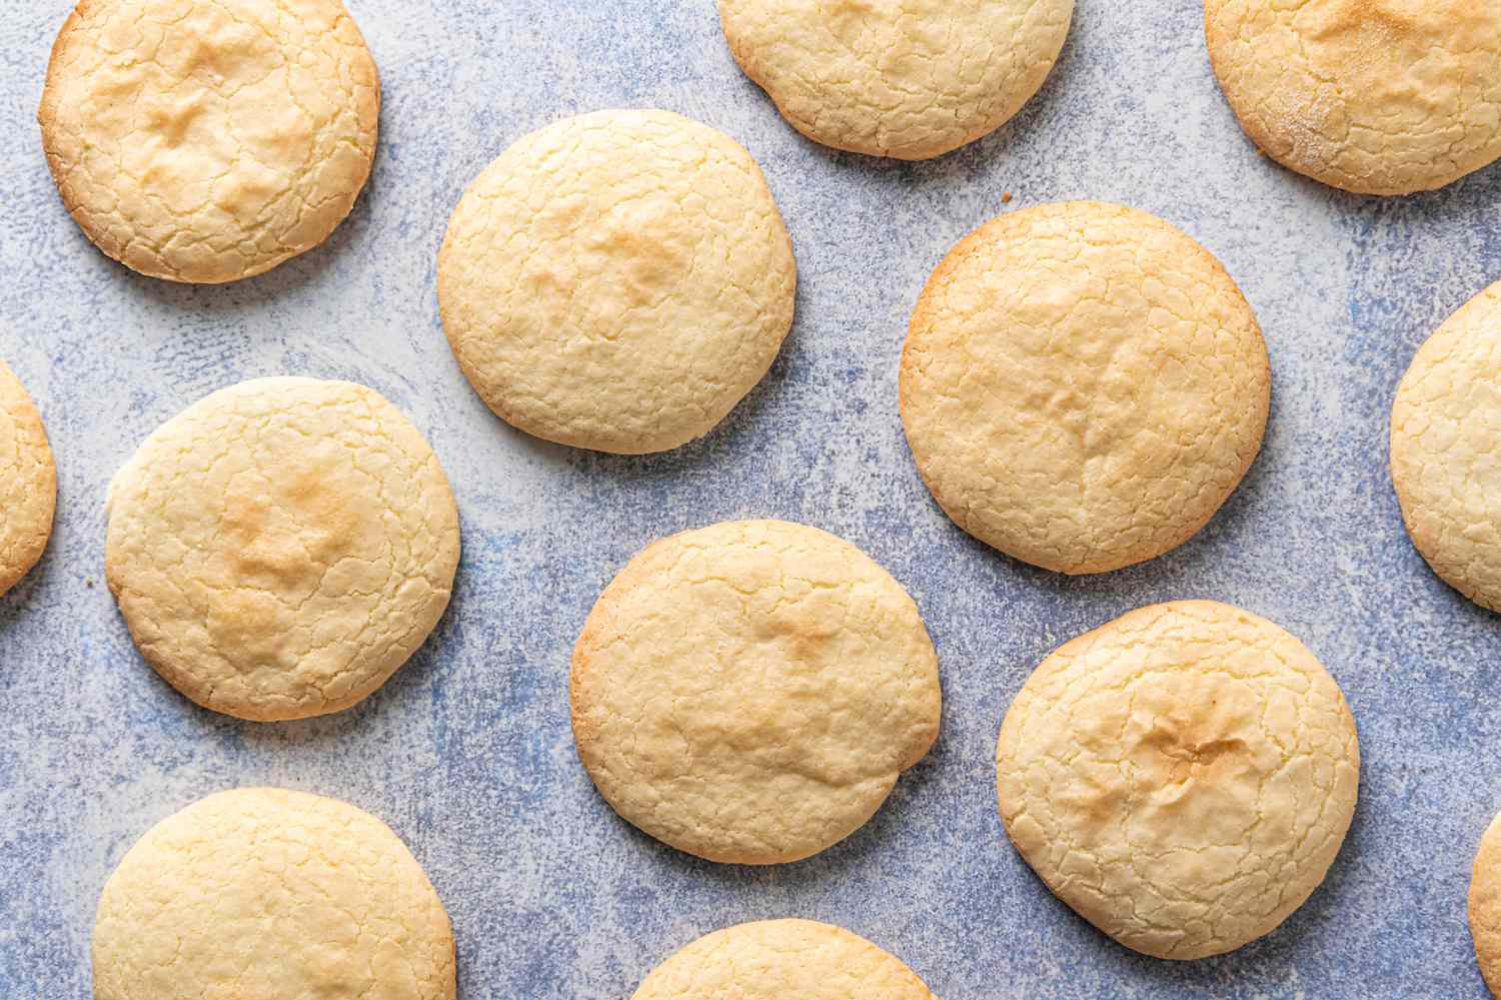 Μπισκότα ζάχαρη: Πώς να φτιάξετε μπισκότα χωρίς ζάχαρη για τα παιδία σας;